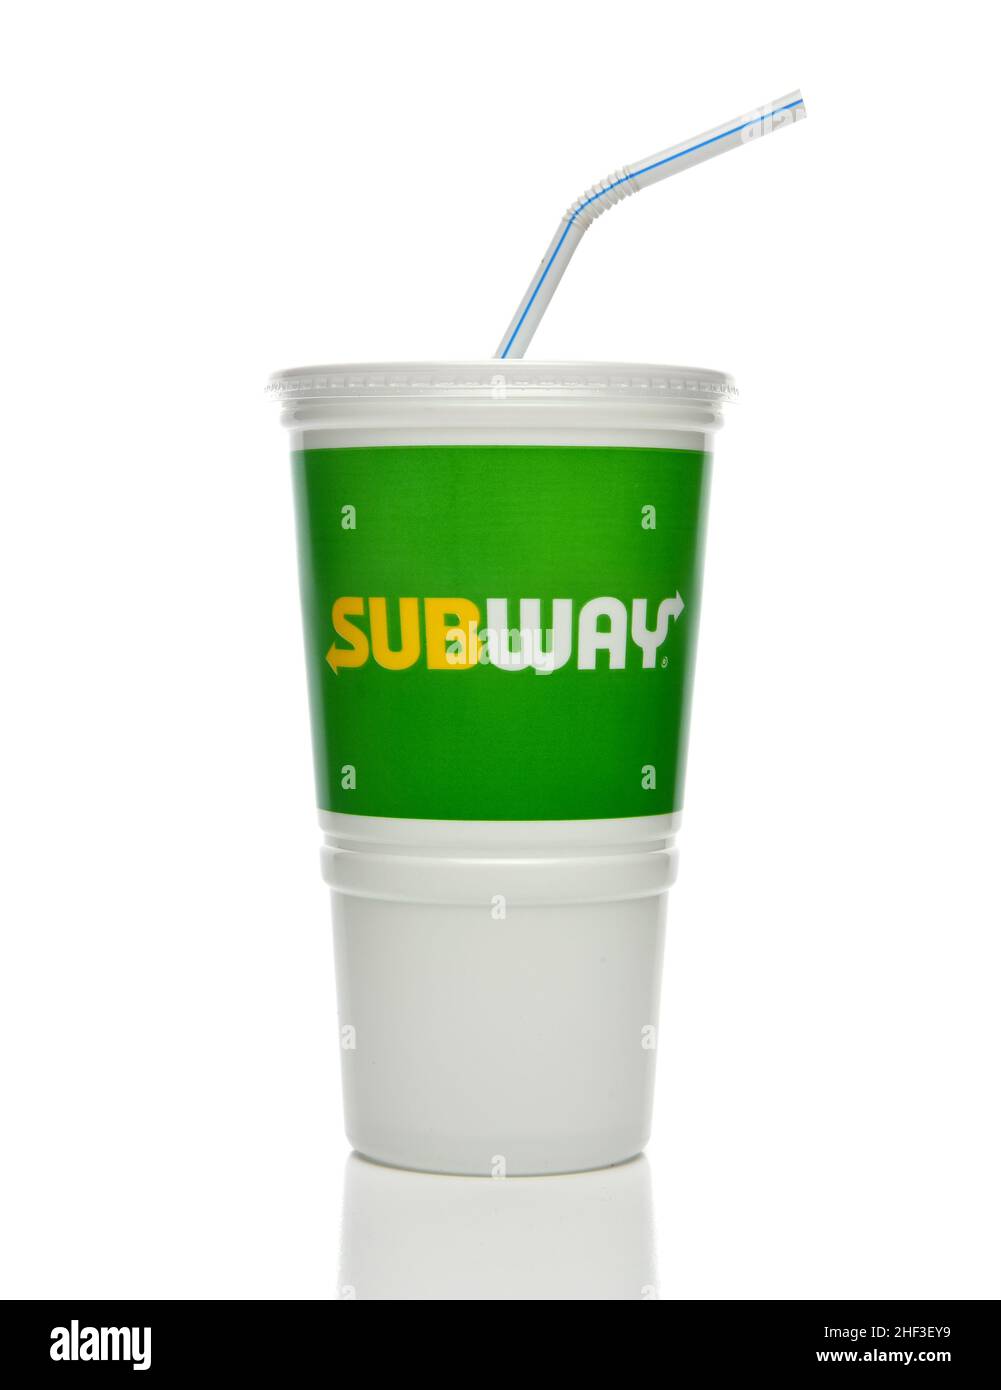 IRIVNE, CALIFORNIA - 11 JAN 2022: Una tazza monouso per bibite analcoliche forma la catena di ristoranti fast food Subway. Foto Stock